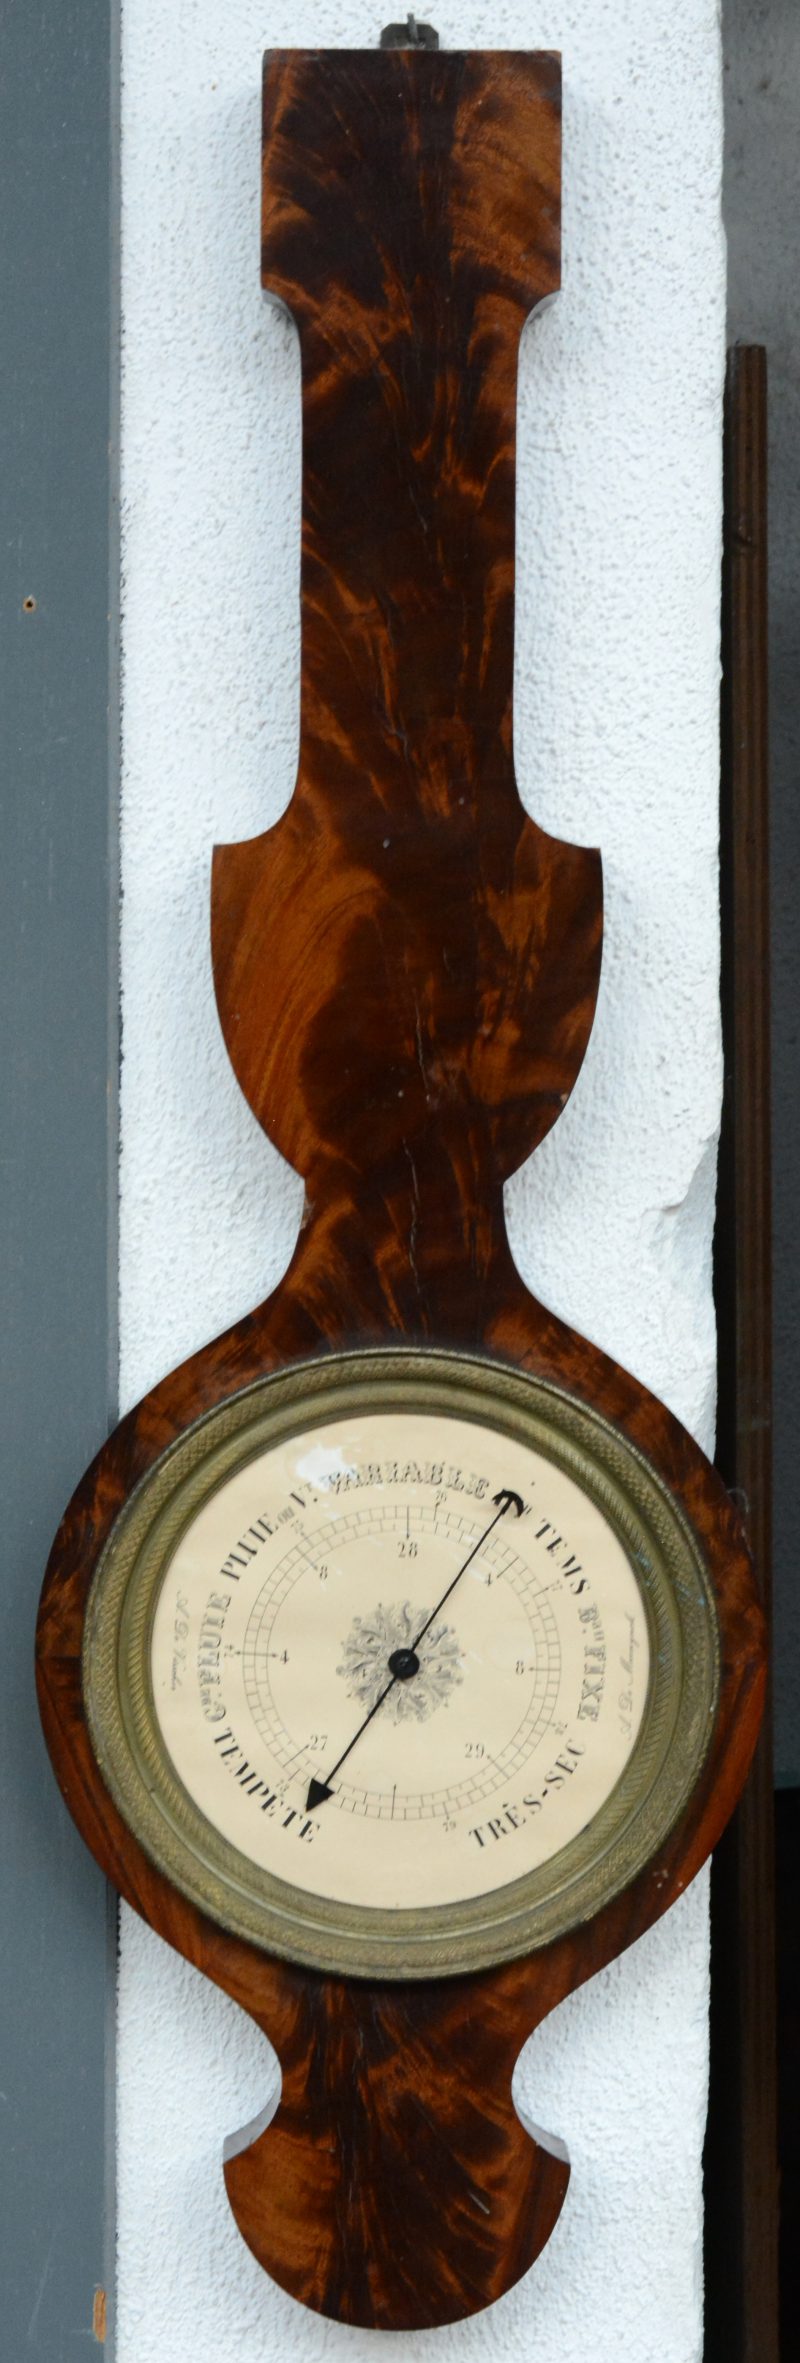 Een barometer met notenhoutfineer. Dekglas manco.